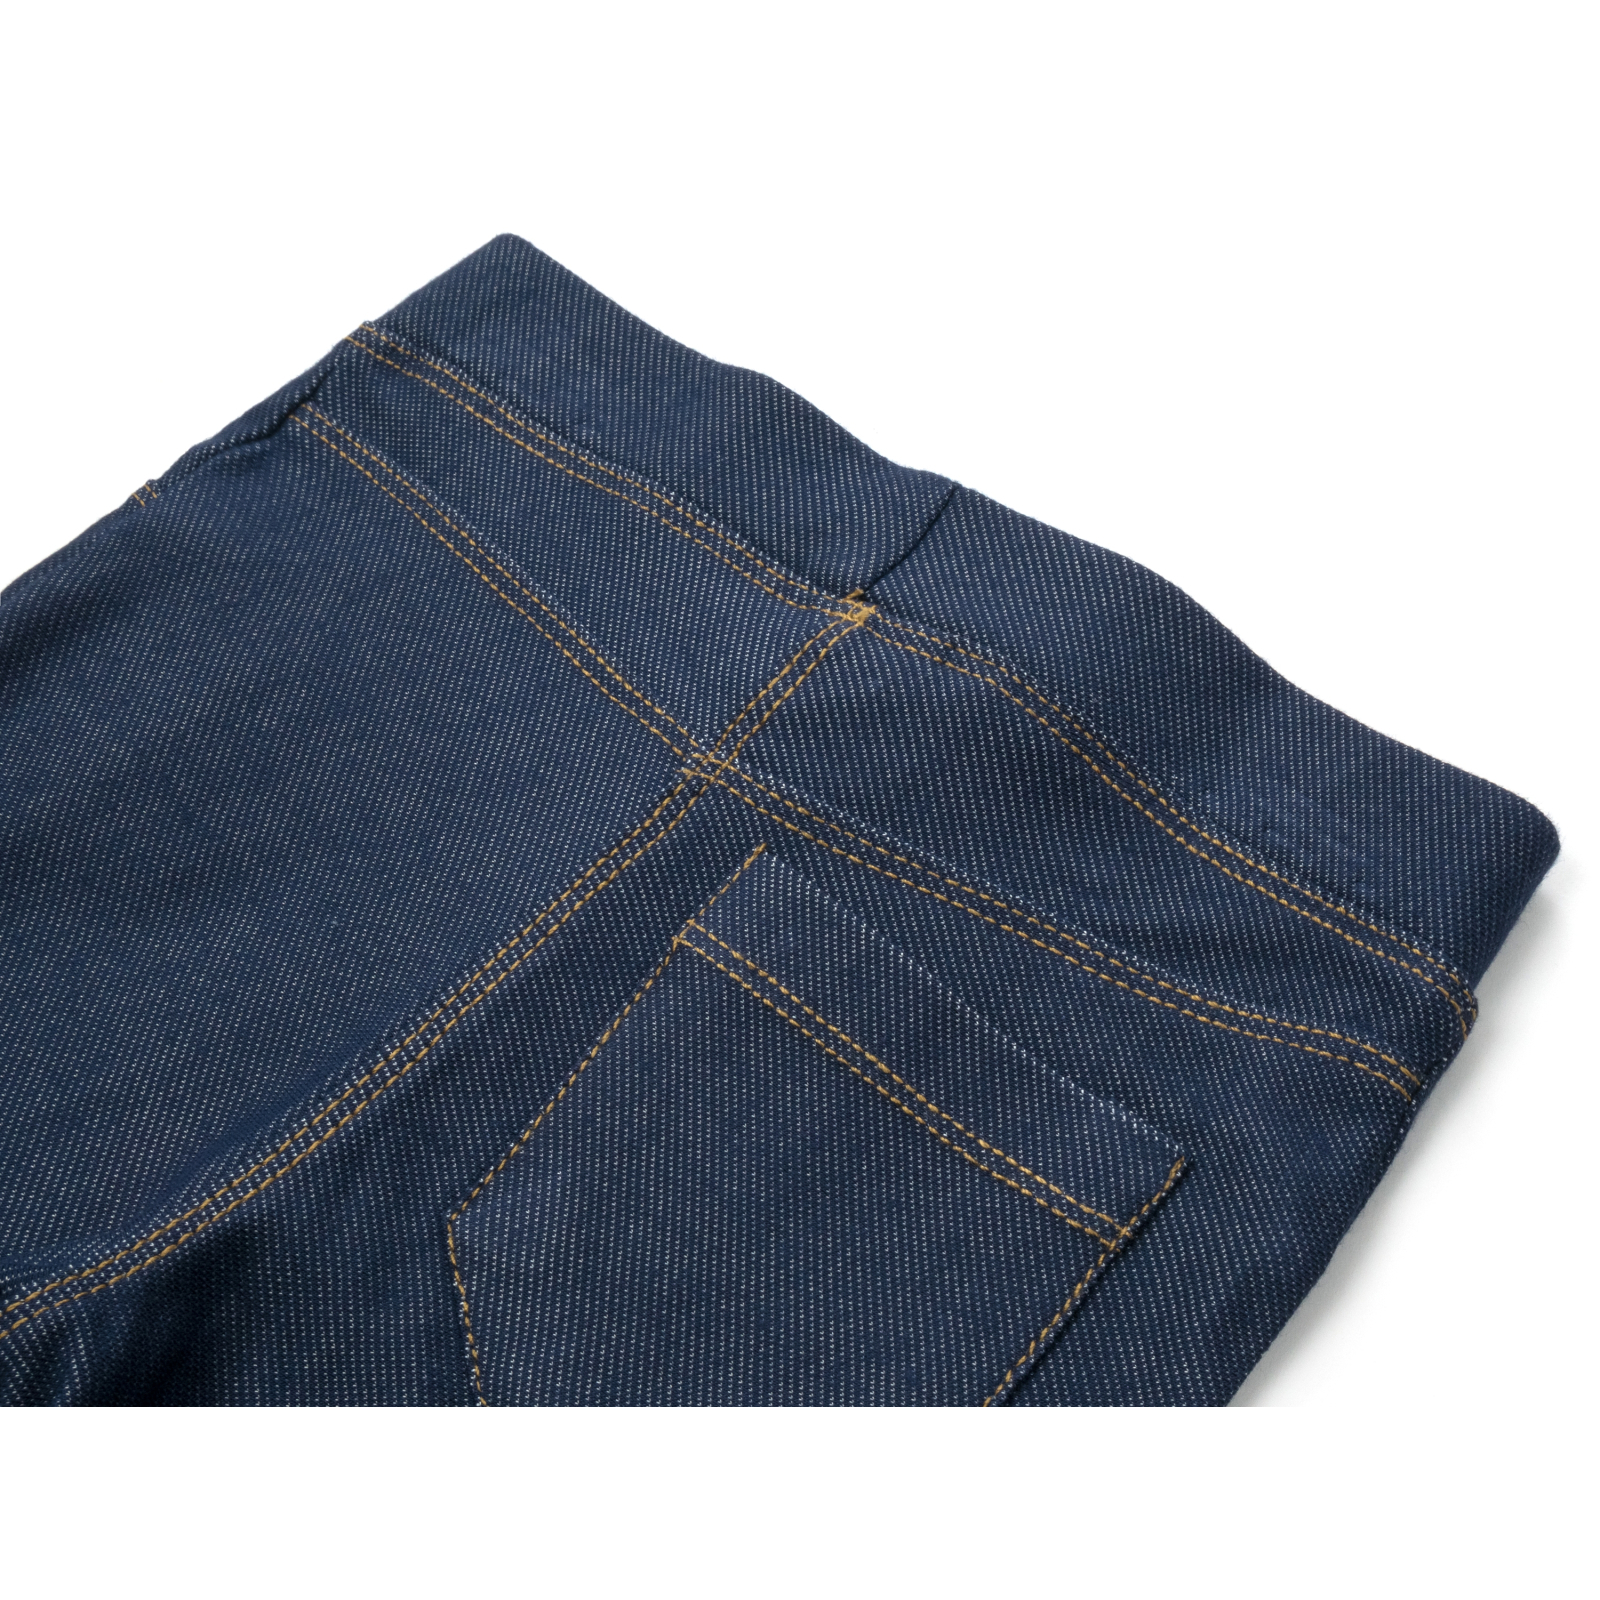 Лосины Breeze трикотажные (4416-122G-jeans) изображение 4